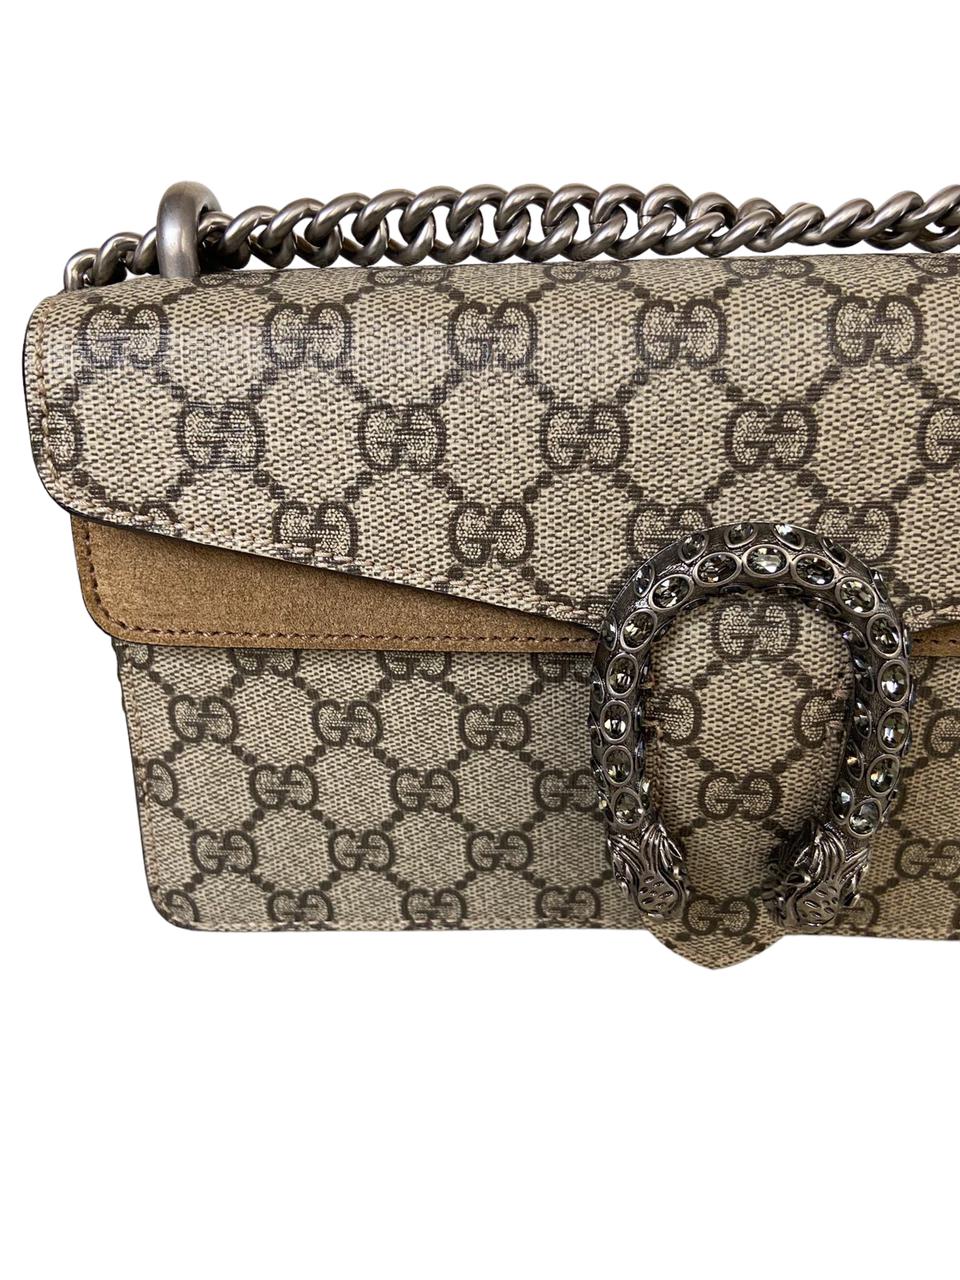 Bolsa Gucci Dionysus Pequena com Dustbag e Caixa